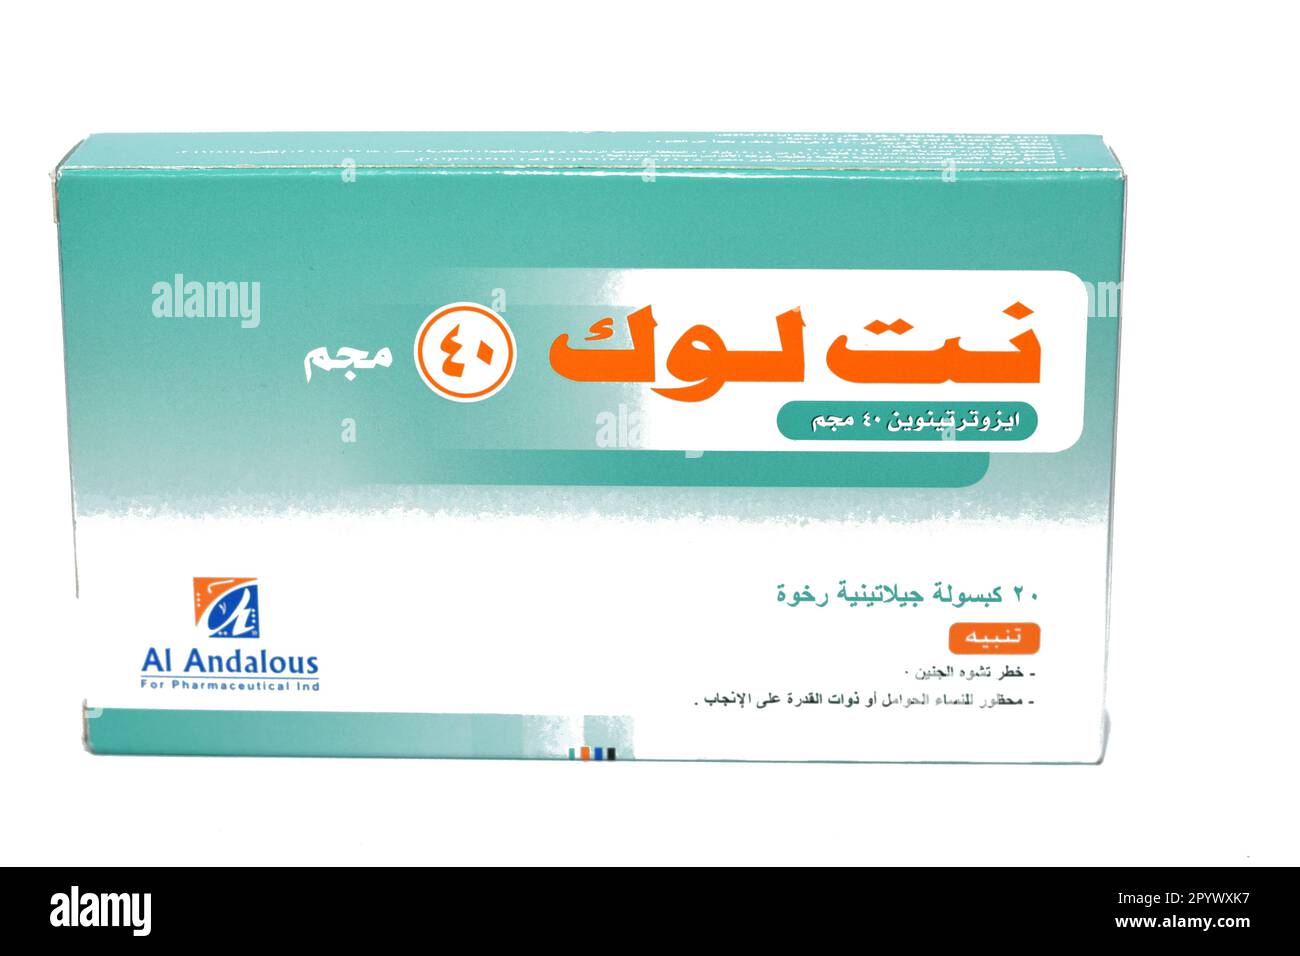 Cairo, Egitto, maggio 2 2023: NetLook capsule di gelatina molle, Isotretinoin è un farmaco di prescrizione orale che colpisce le ghiandole sebacee ed è usato a. Foto Stock